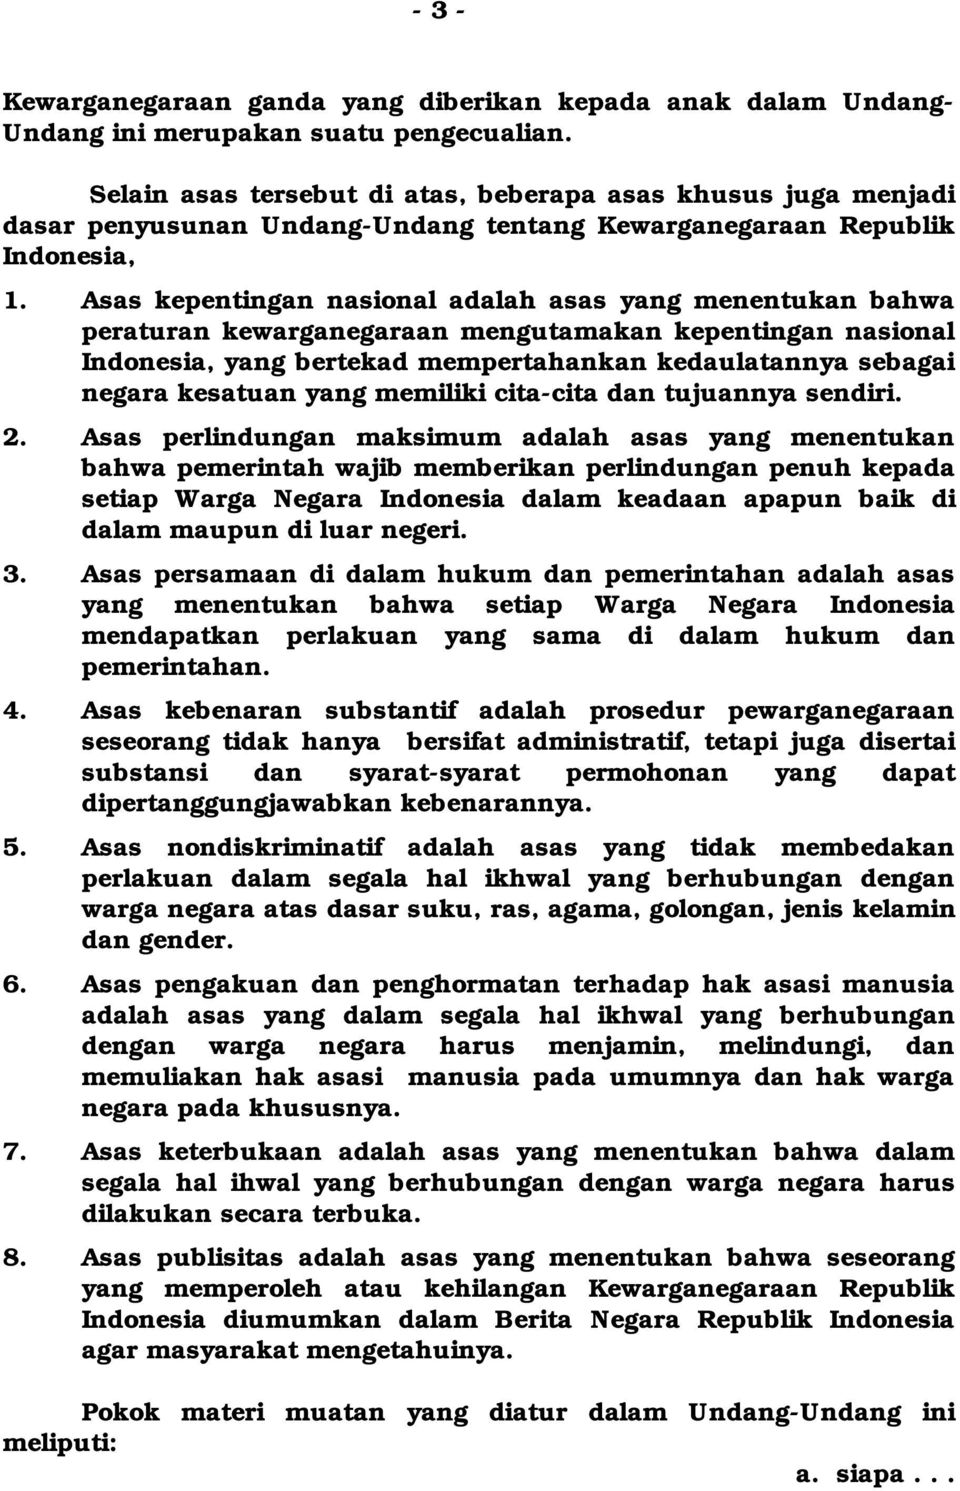 Asas kepentingan nasional adalah asas yang menentukan bahwa peraturan kewarganegaraan mengutamakan kepentingan nasional Indonesia, yang bertekad mempertahankan kedaulatannya sebagai negara kesatuan